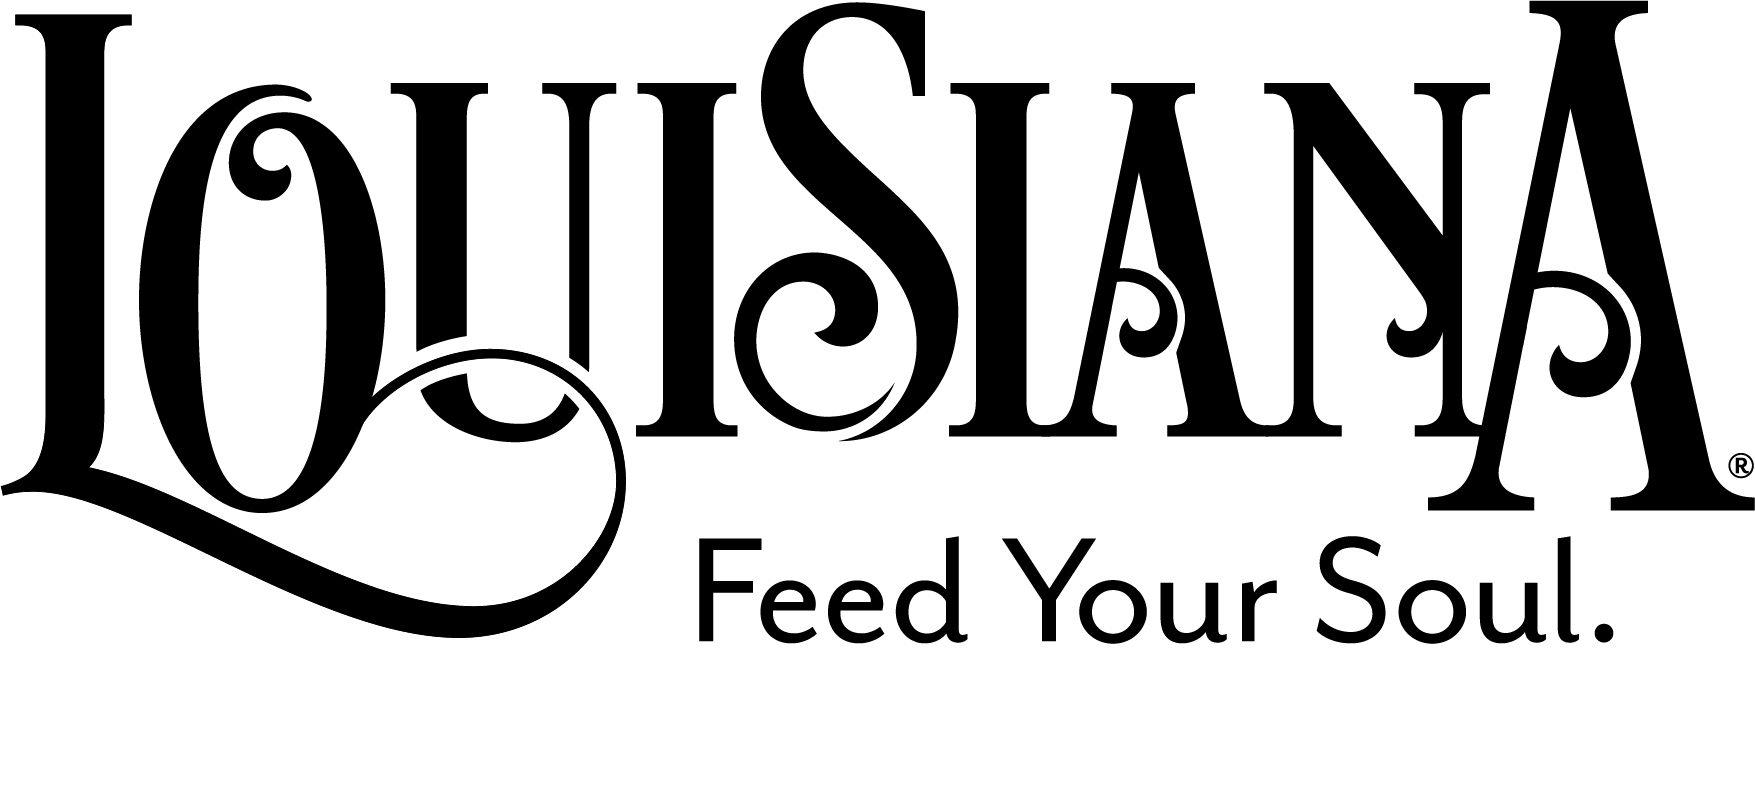 Louisiana Logo - Louisiana Cast & Blast